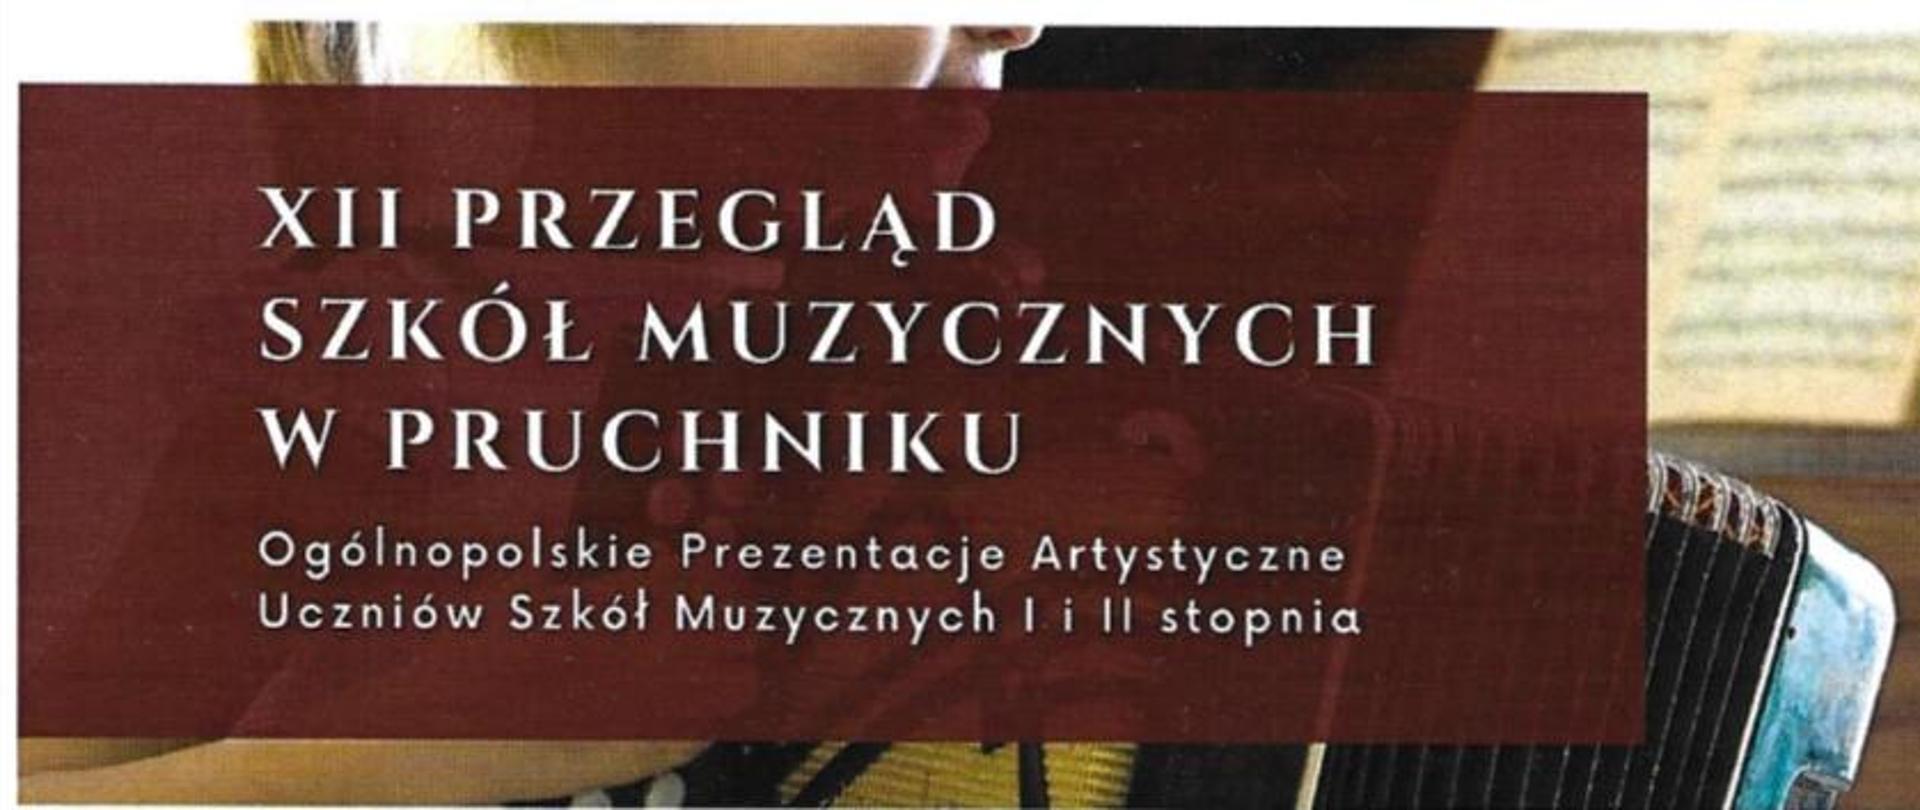 xii przegląd szkól muzycznych w pruchniku ogólnopolskie prezentaje artystyczne uczniów szkot muzycznych l i ii stopnia